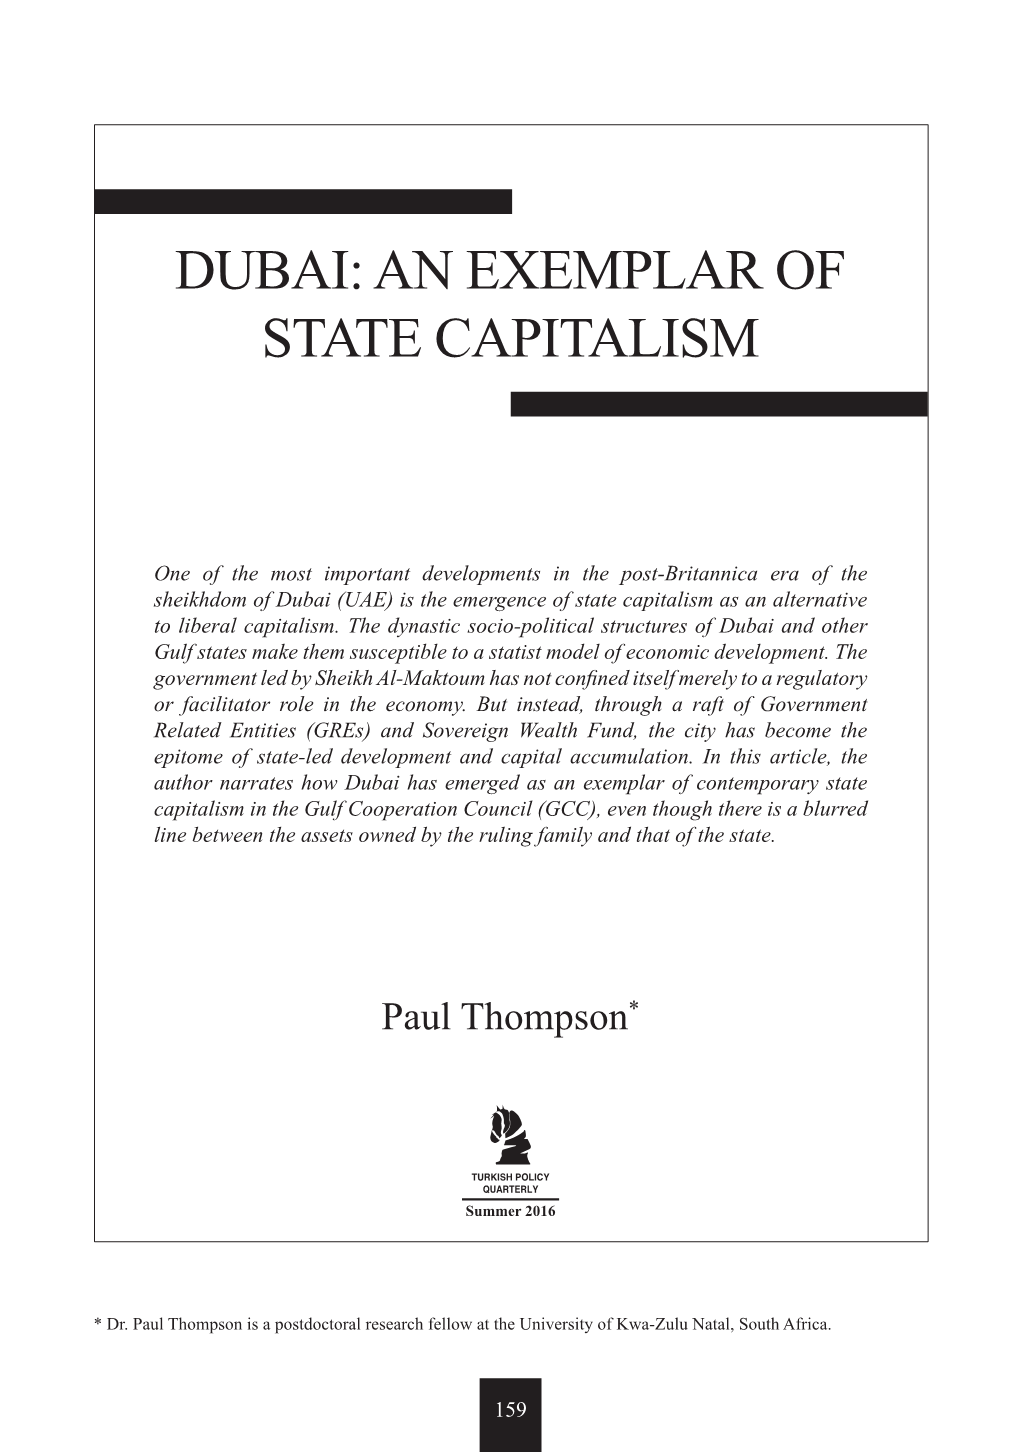 Dubai: an Exemplar of State Capitalism